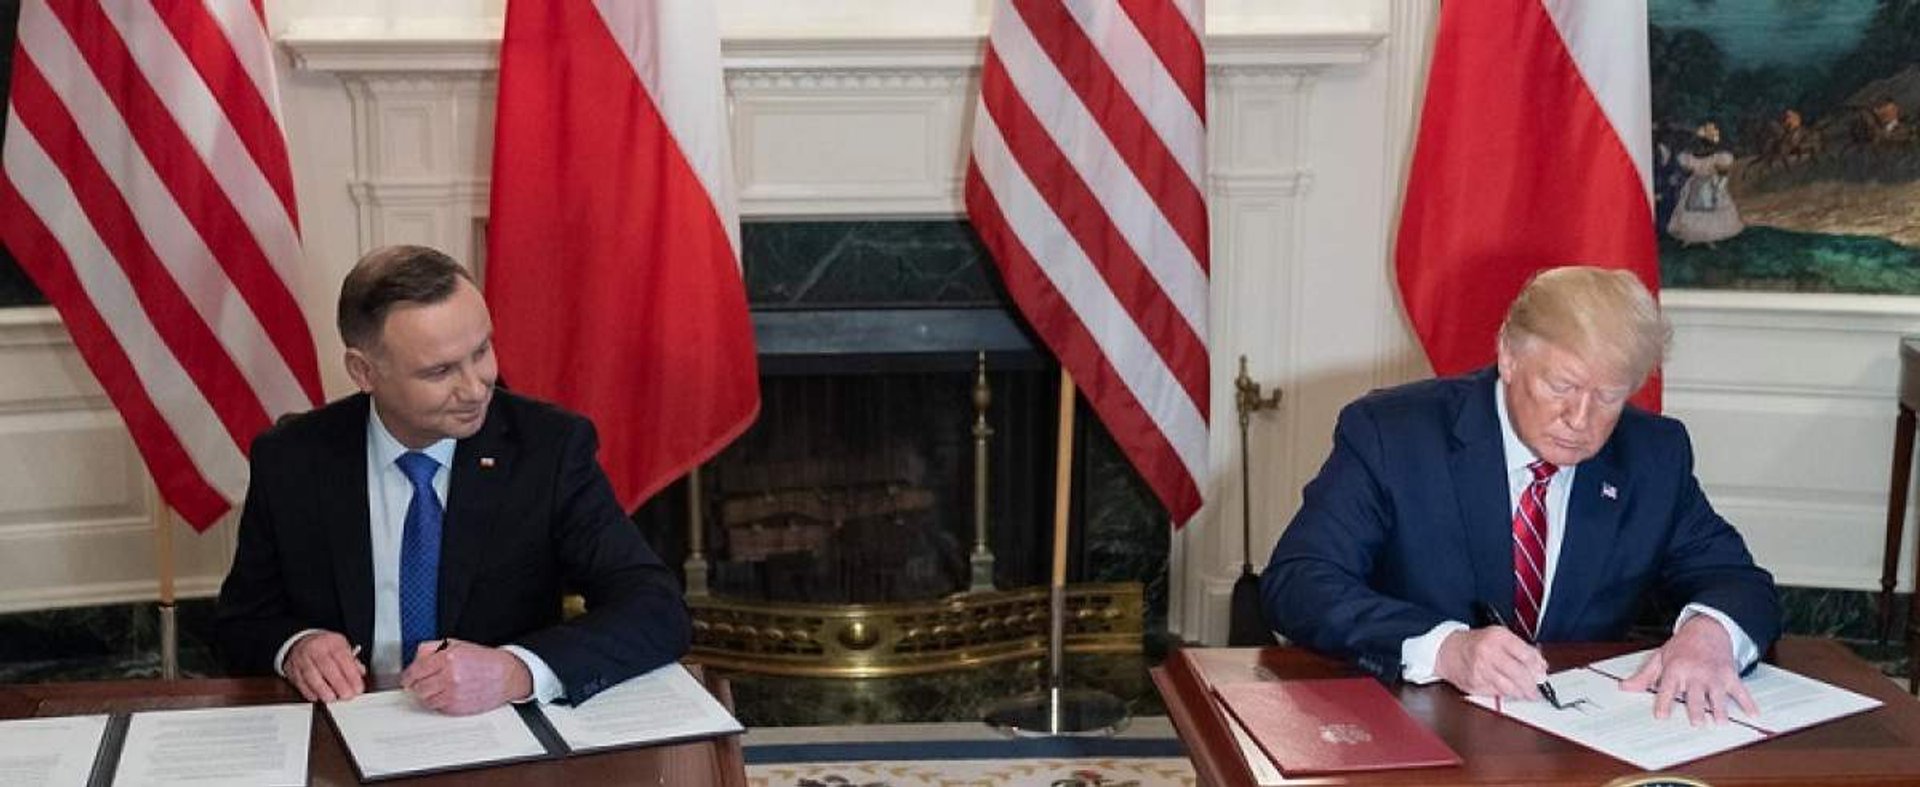 Spotkanie Duda-Trump przyniosło poparcie polskiemu prezydentowi ze strony prezydenta USA